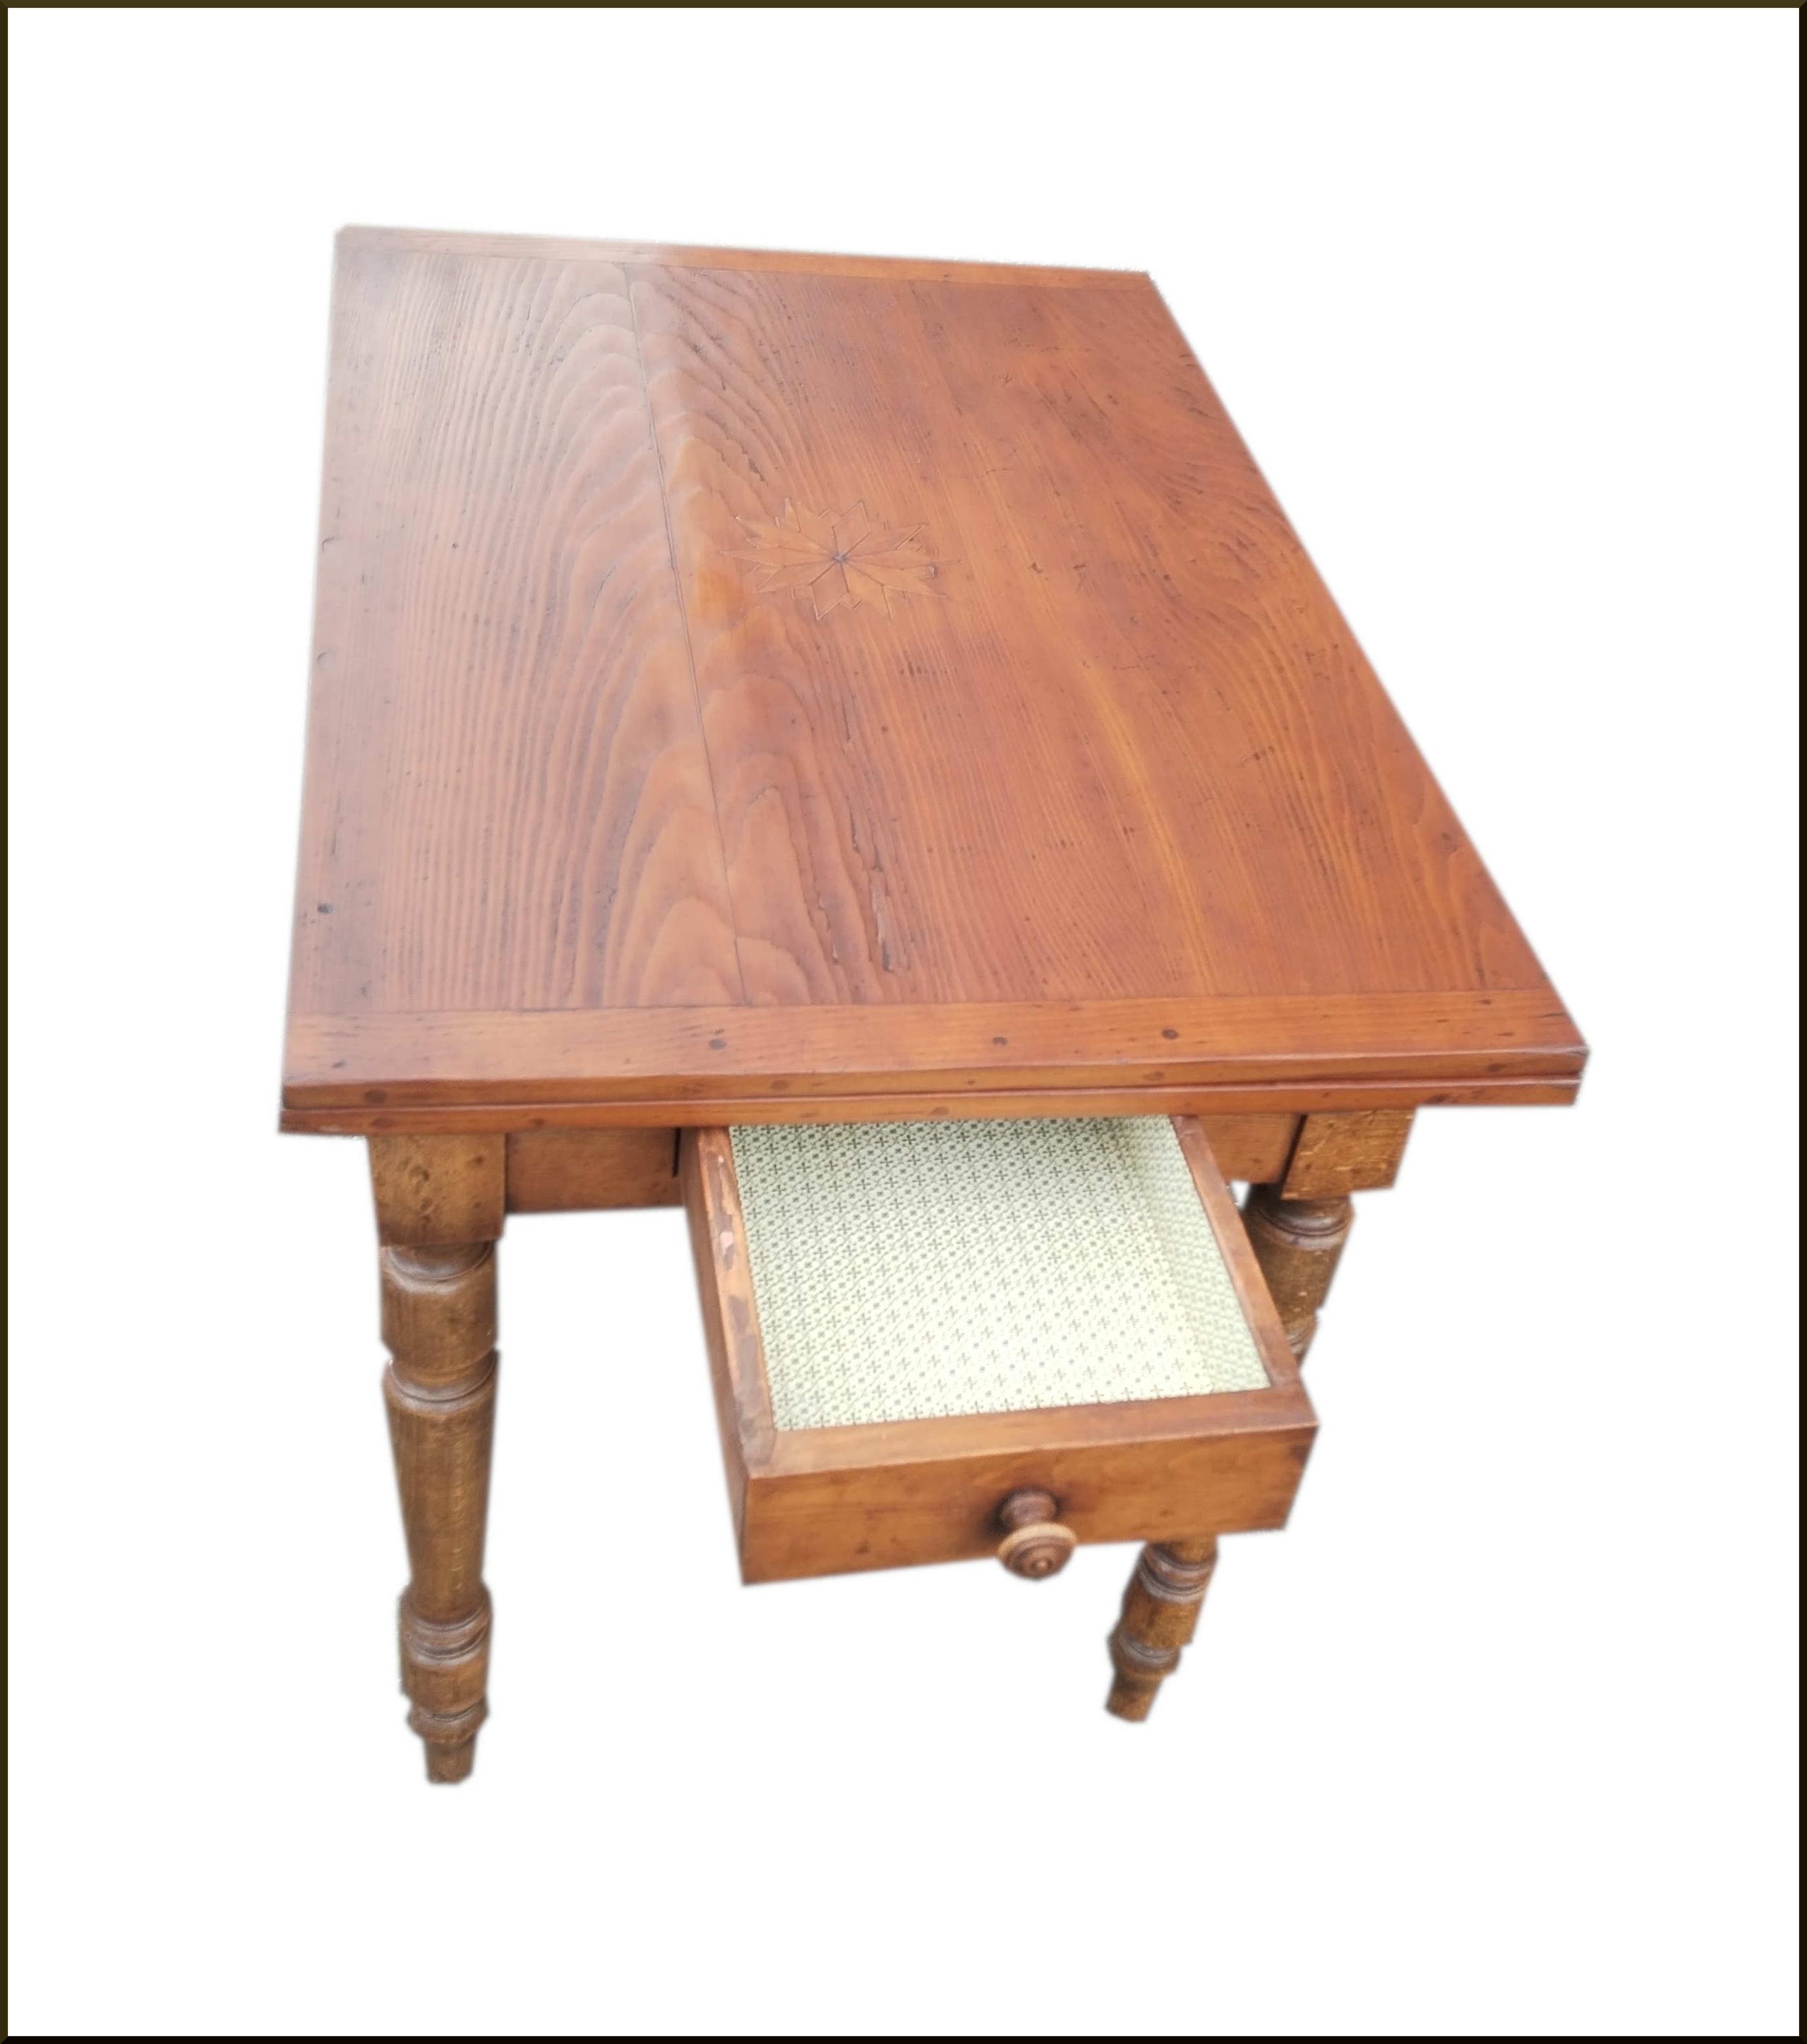 Tavolo vecchio realizzato con legname antico e gamba tornita